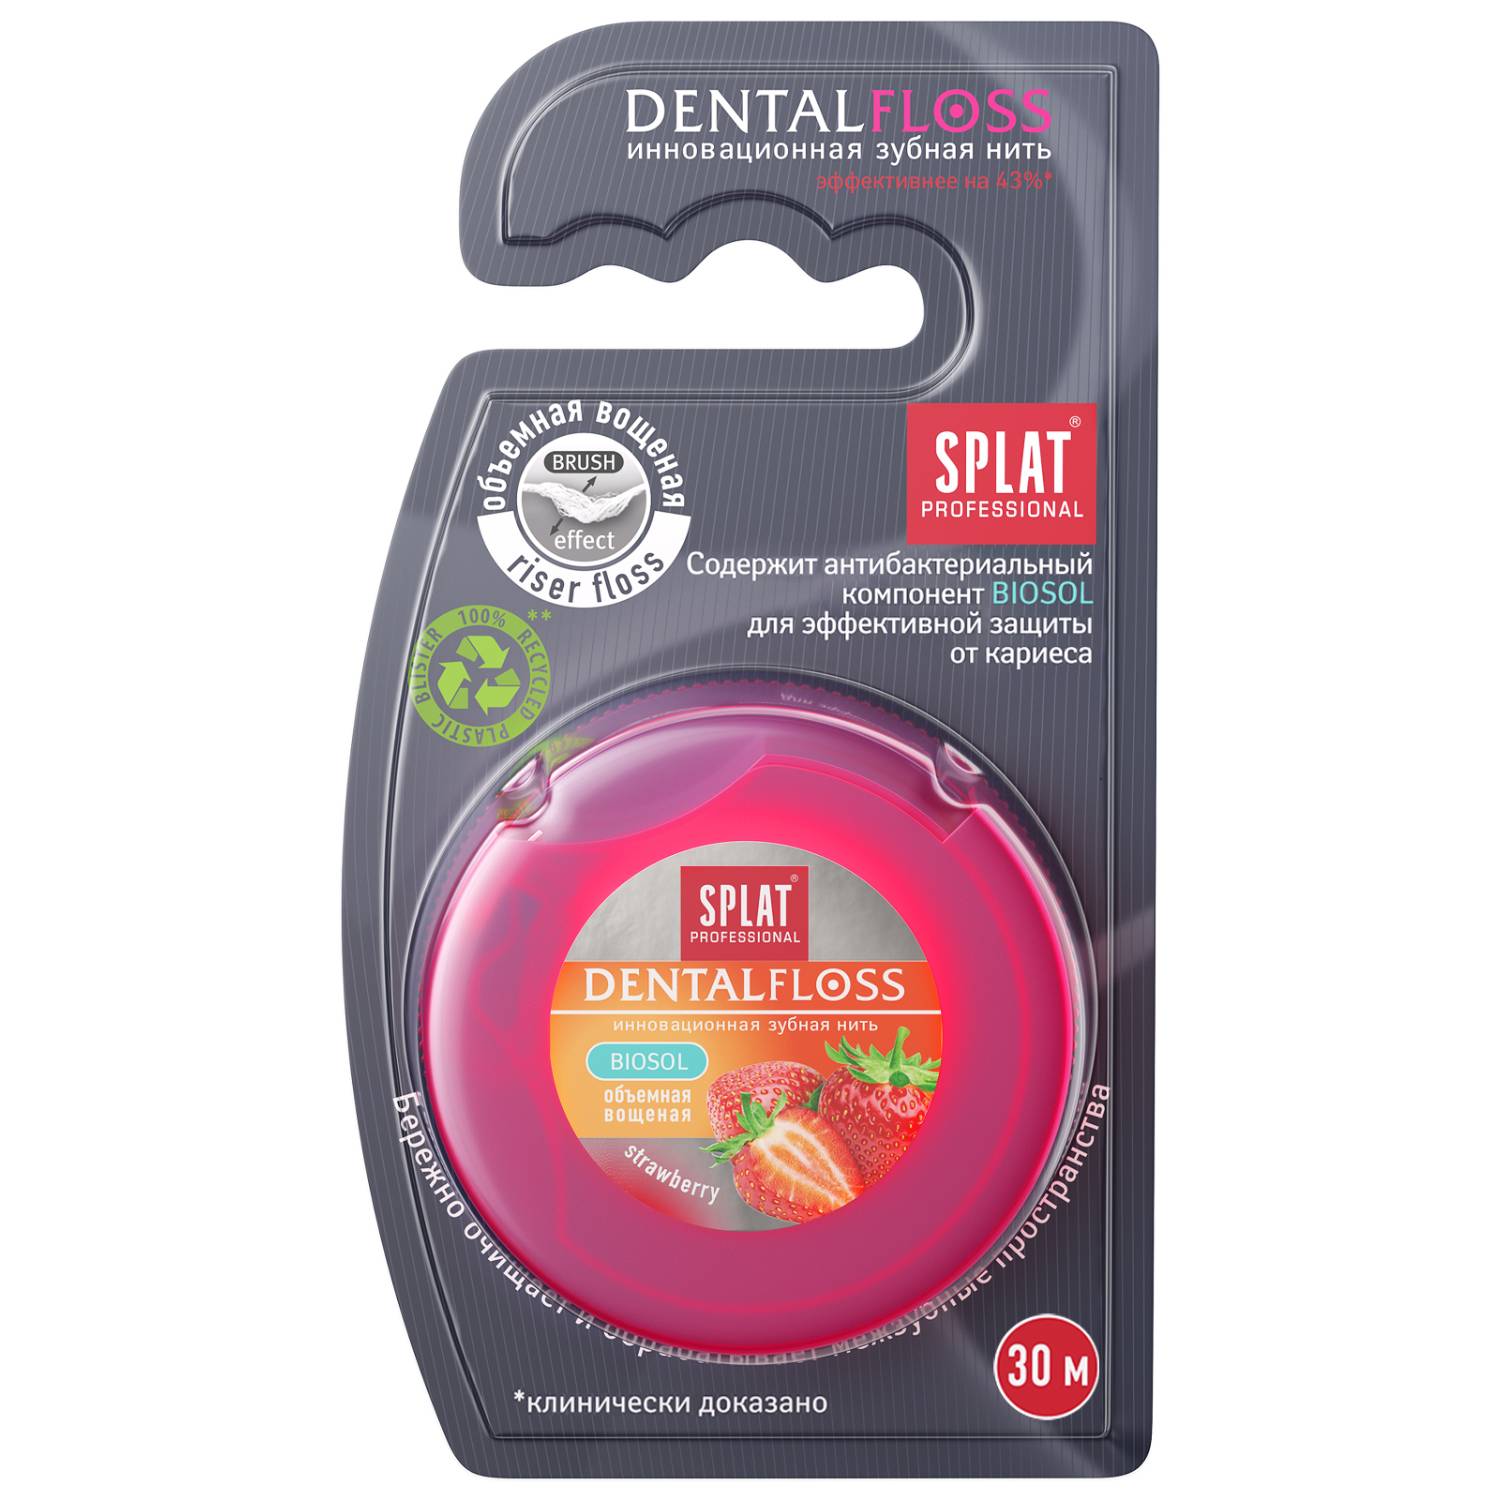 Splat Объемная зубная нить DentalFloss с ароматом клубники 14+, 30 м (Splat, Professional)